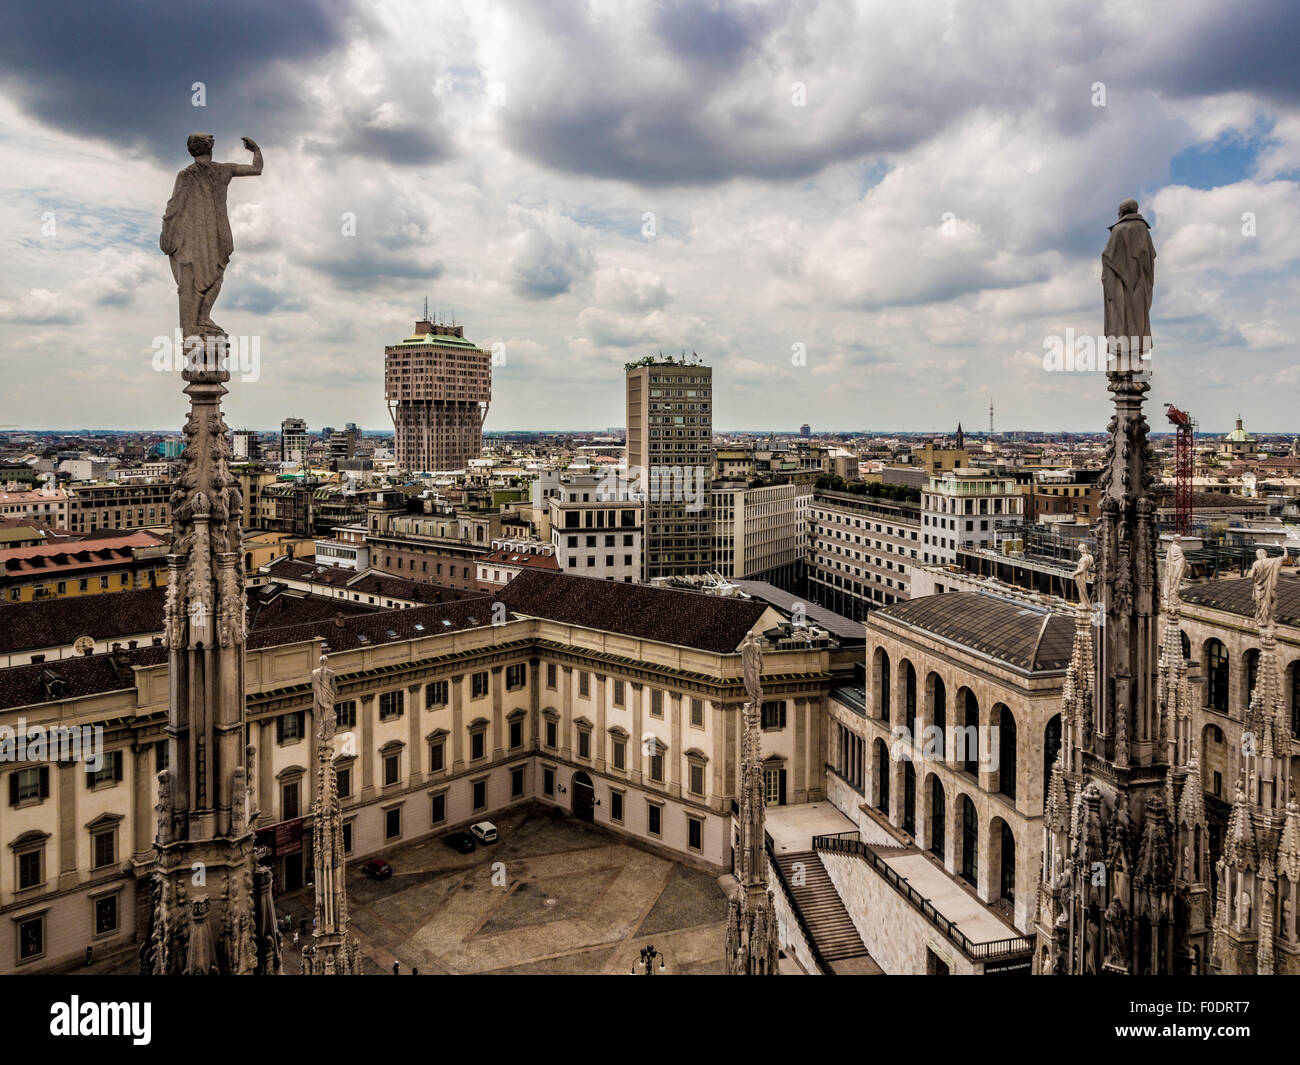 Statua sul tetto del Duomo di Milano. Foto Stock